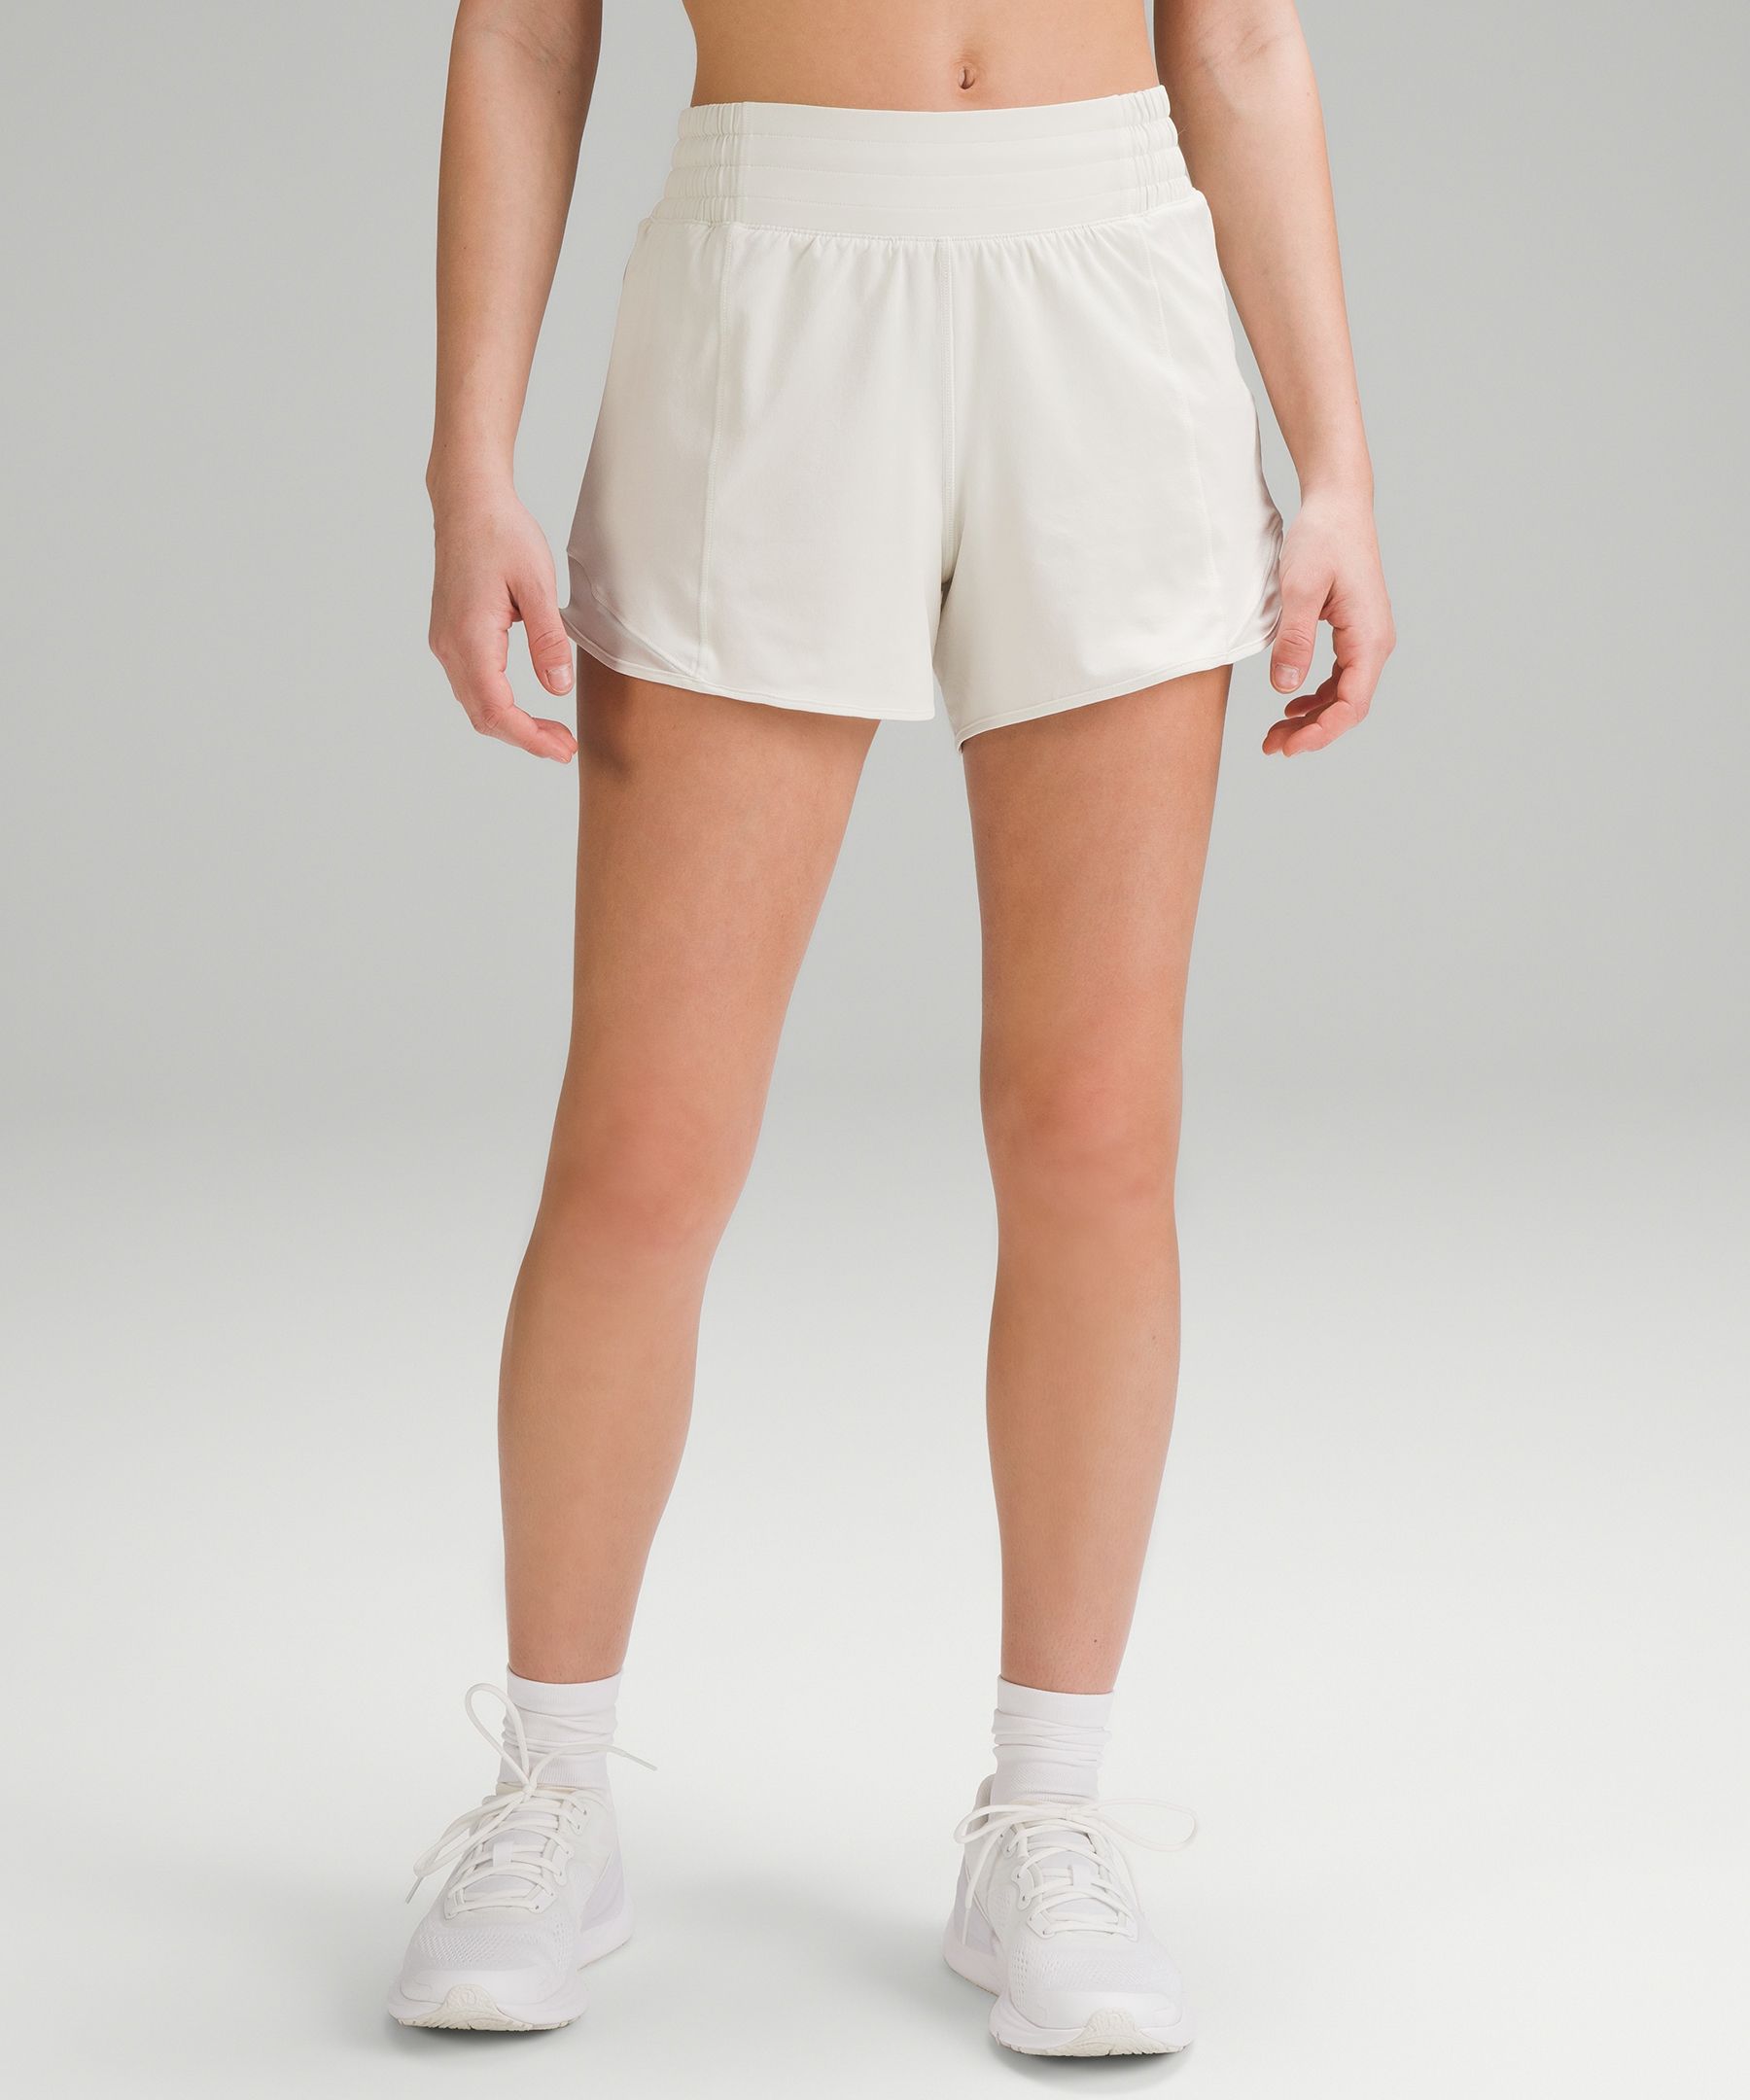 Lululemon Hotty Hot High-rise Lined Shorts 4"